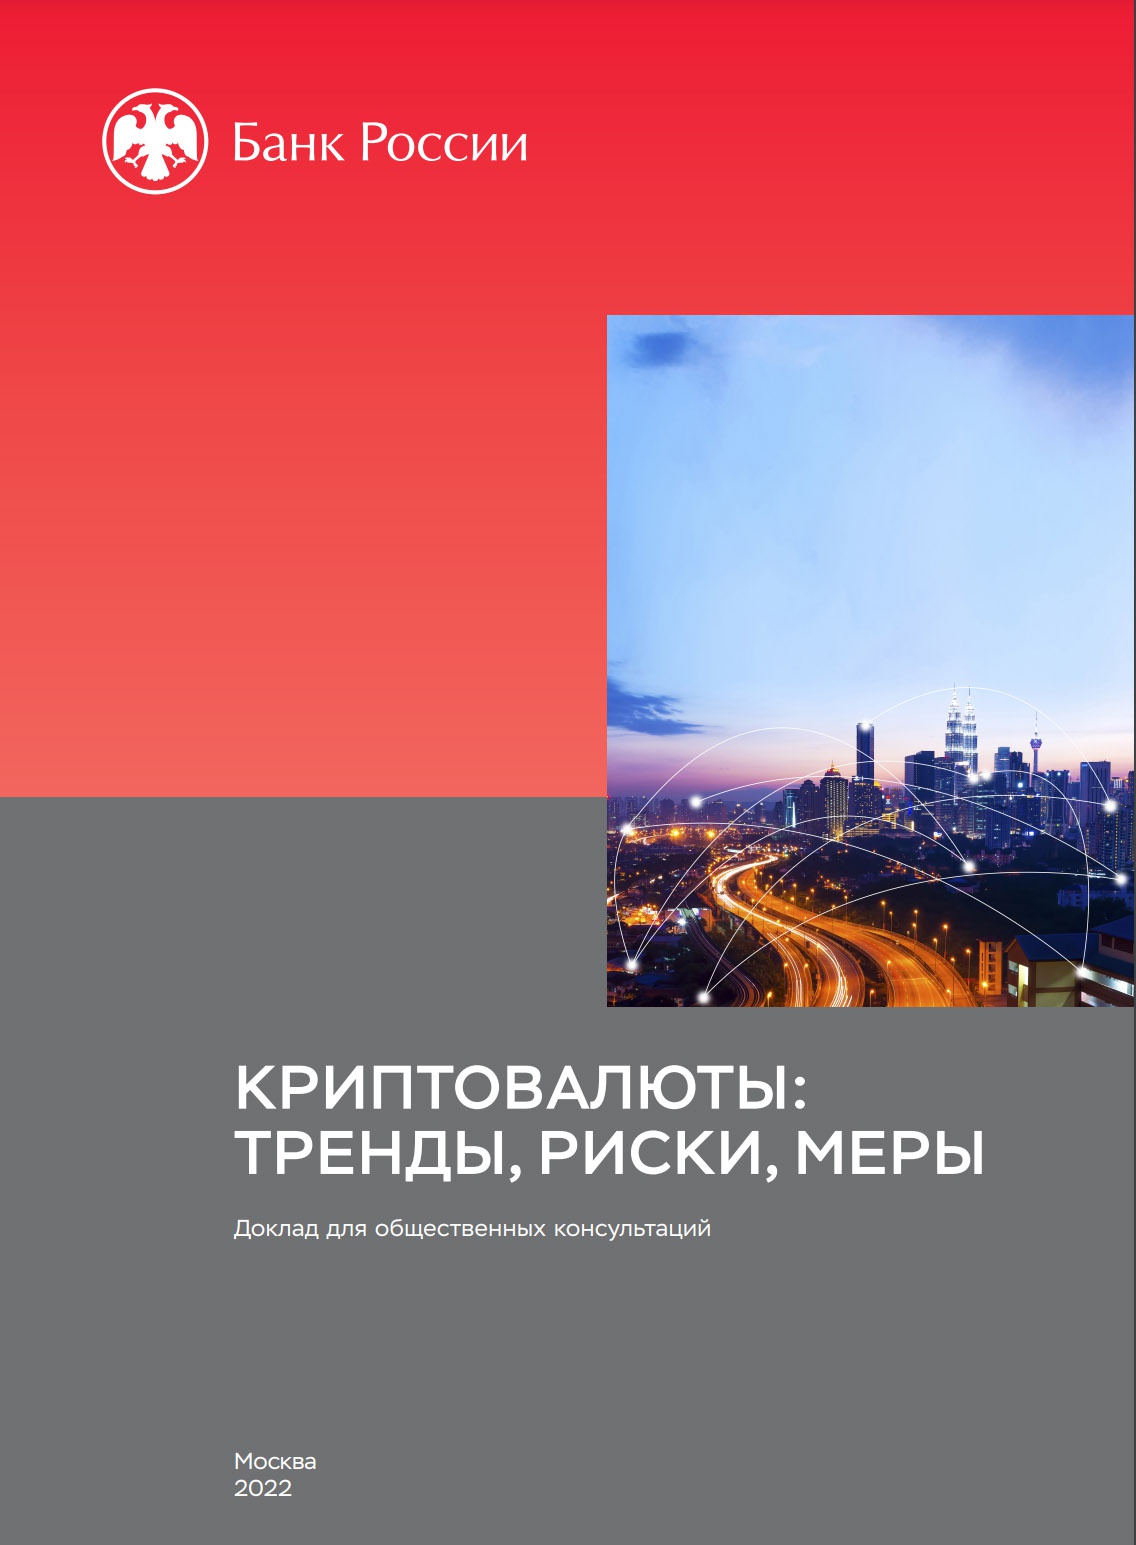 Центральный банк России опубликовал доклад «Криптовалюты: тренды, риски, меры», вызвавший большие дискуссии.